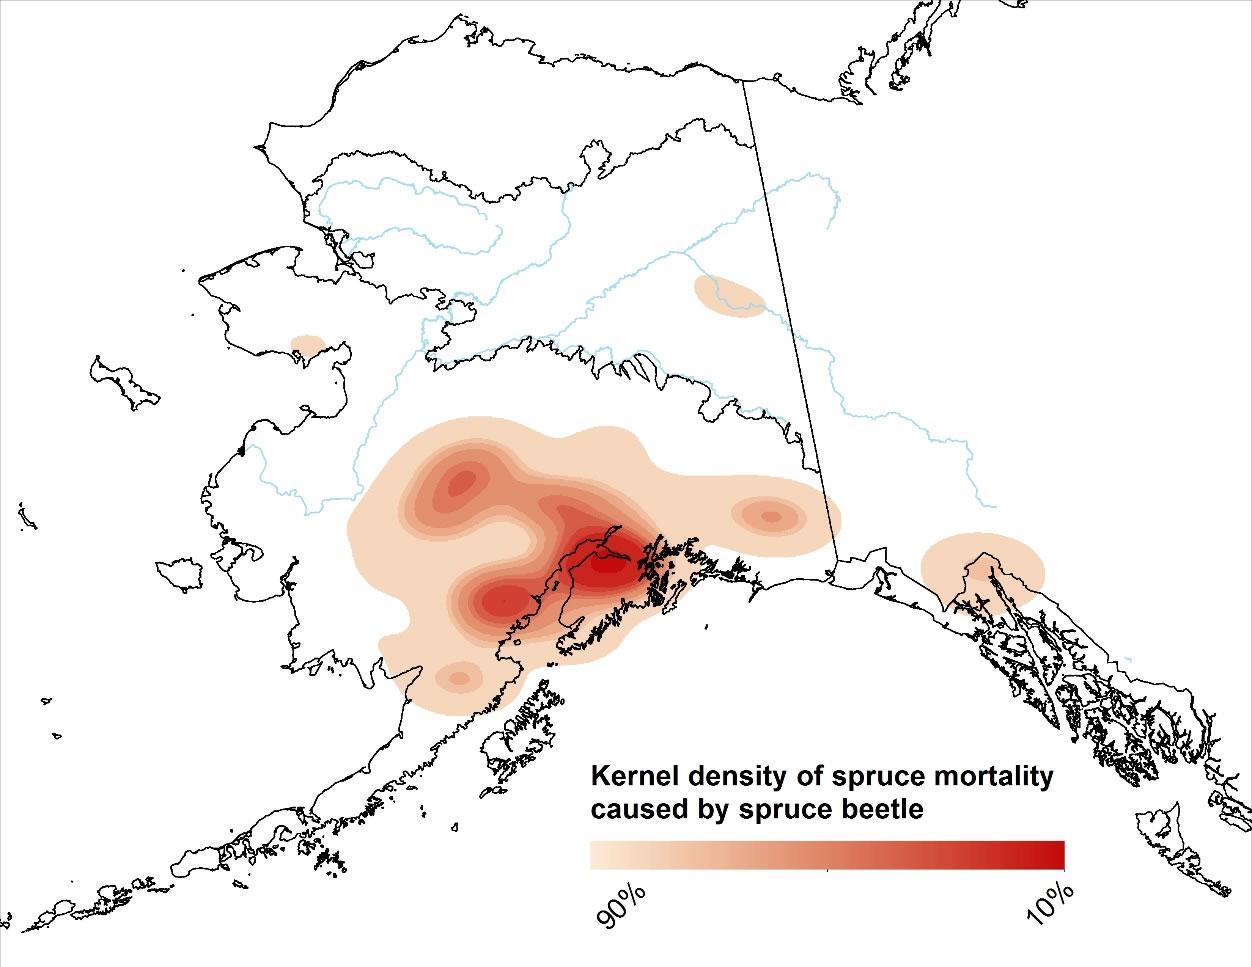 Kernel density of spruce beetle damage